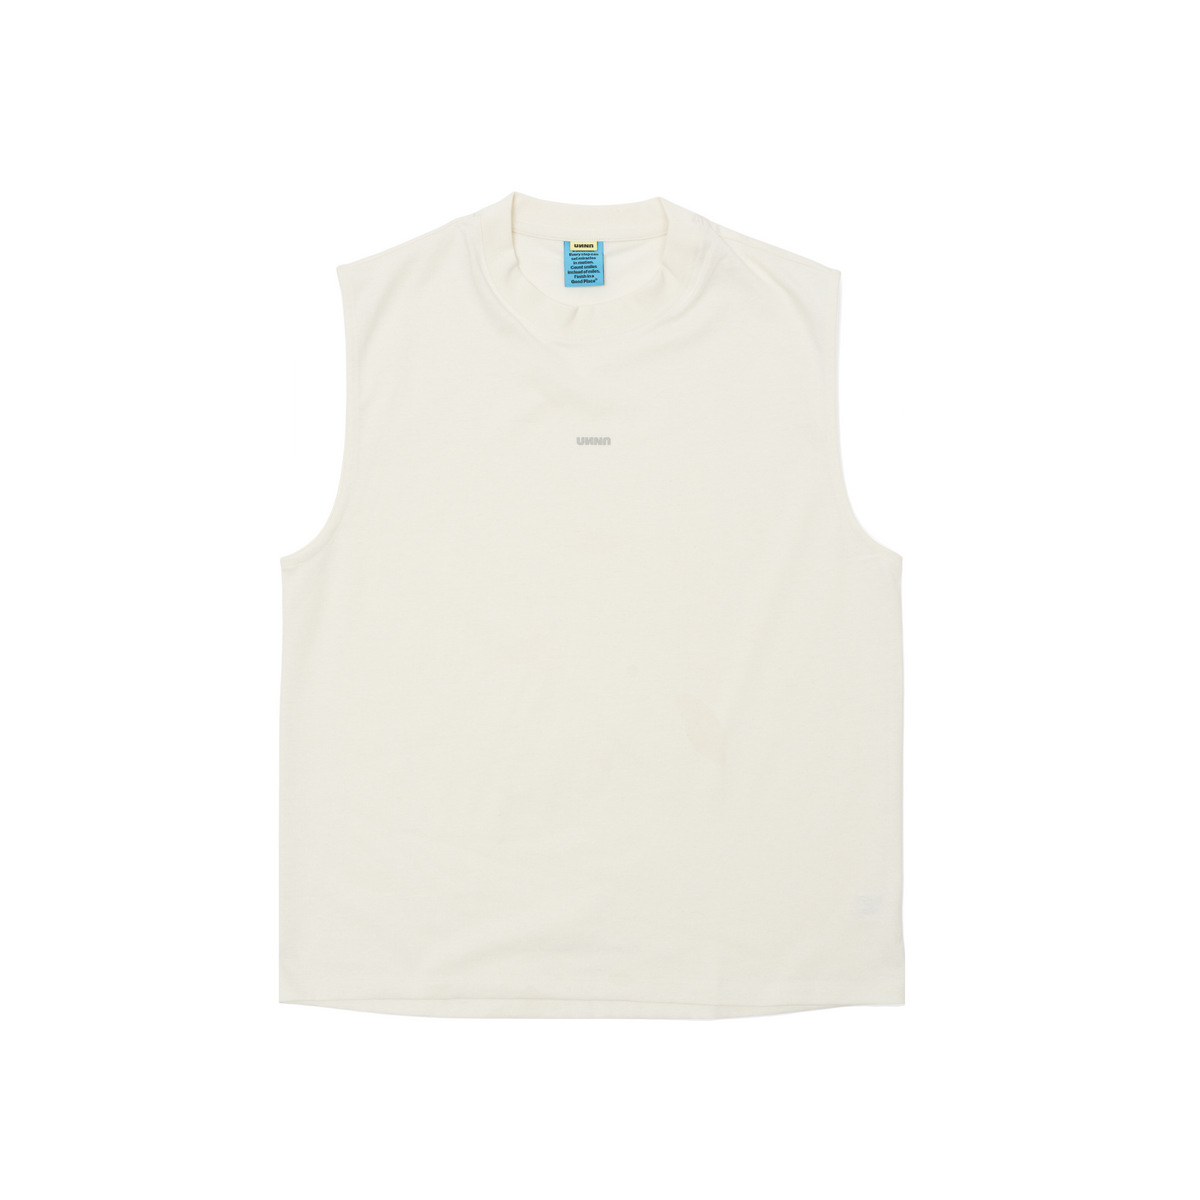 【超激得爆買い】GR Uniforma Printed Jersey T-Shirt Tシャツ/カットソー(半袖/袖なし)